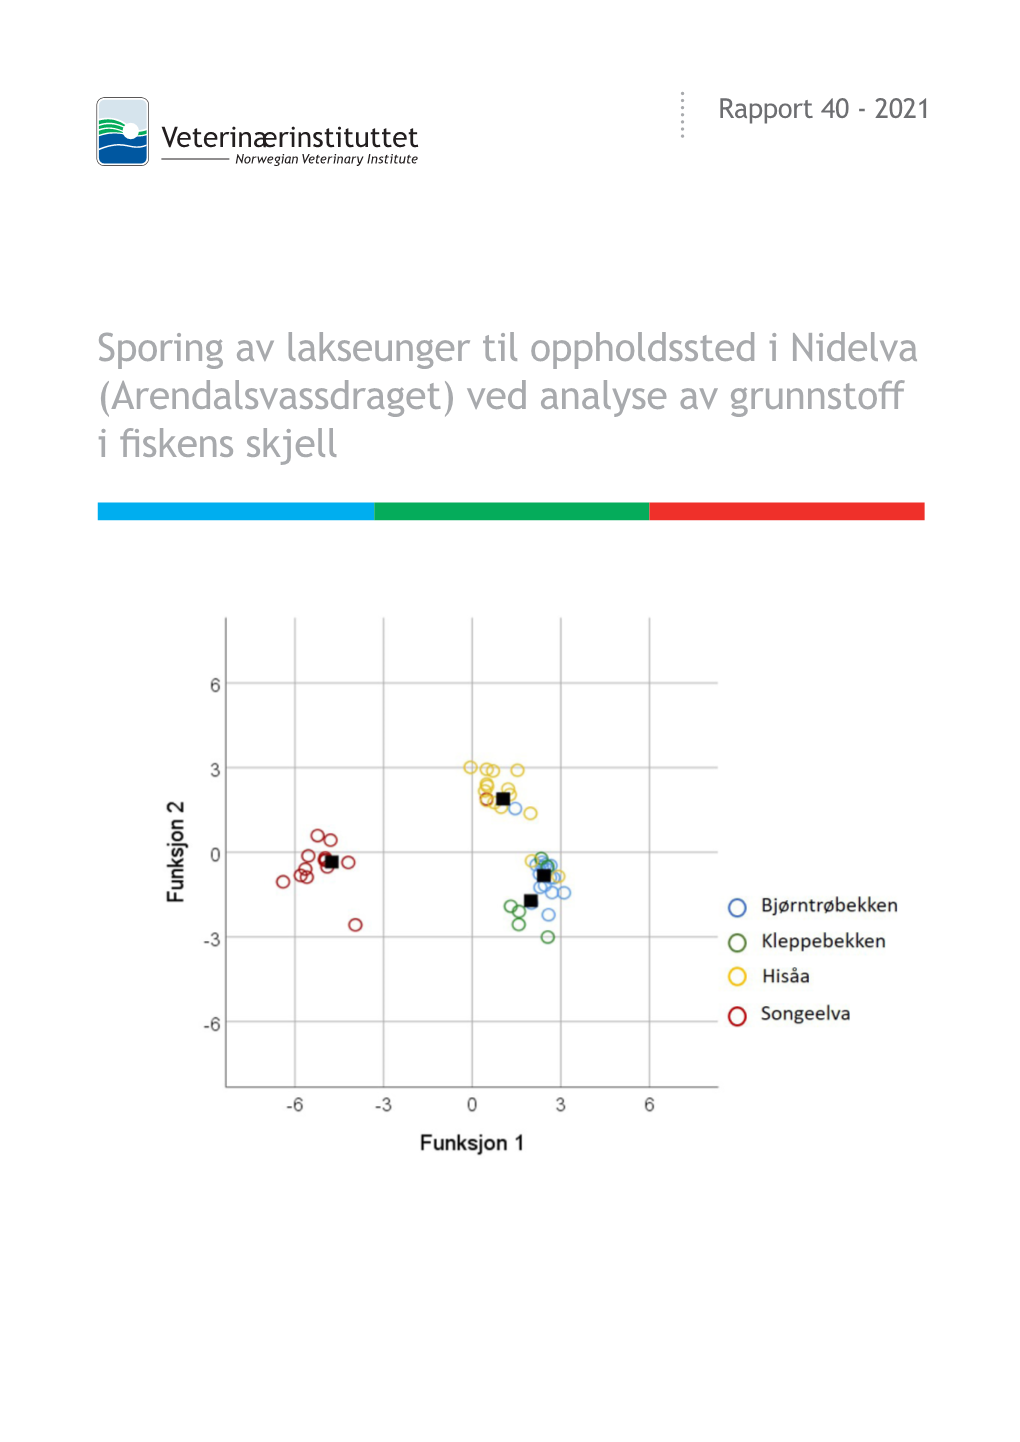 Sporing Av Lakseunger Til Oppholdssted I Nidelva (Arendalsvassdraget) Ved Analyse Av Grunnstoff I Fiskens Skjell RAPPORT 40/2021